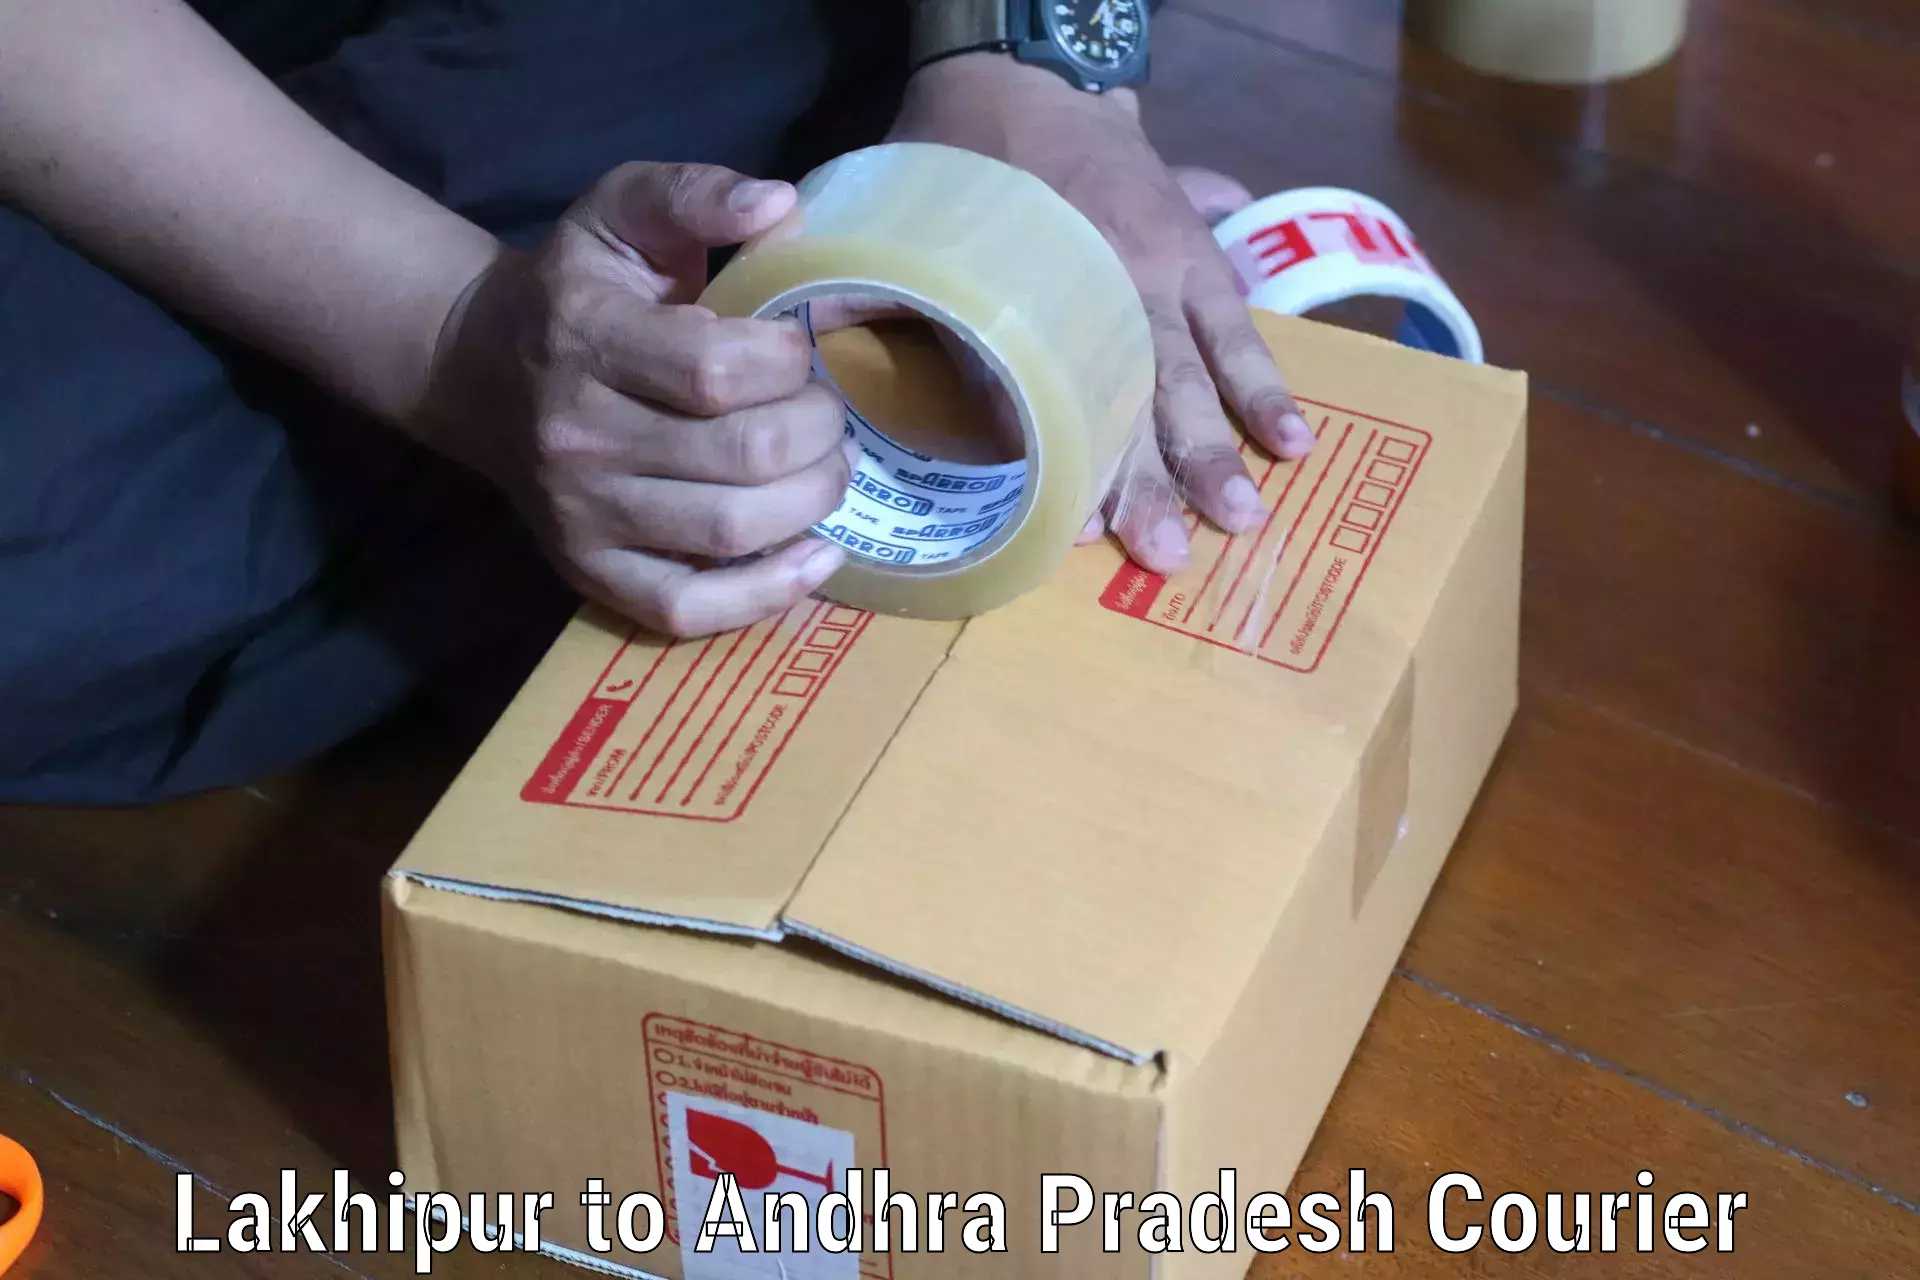 Courier service comparison Lakhipur to Sydapuram